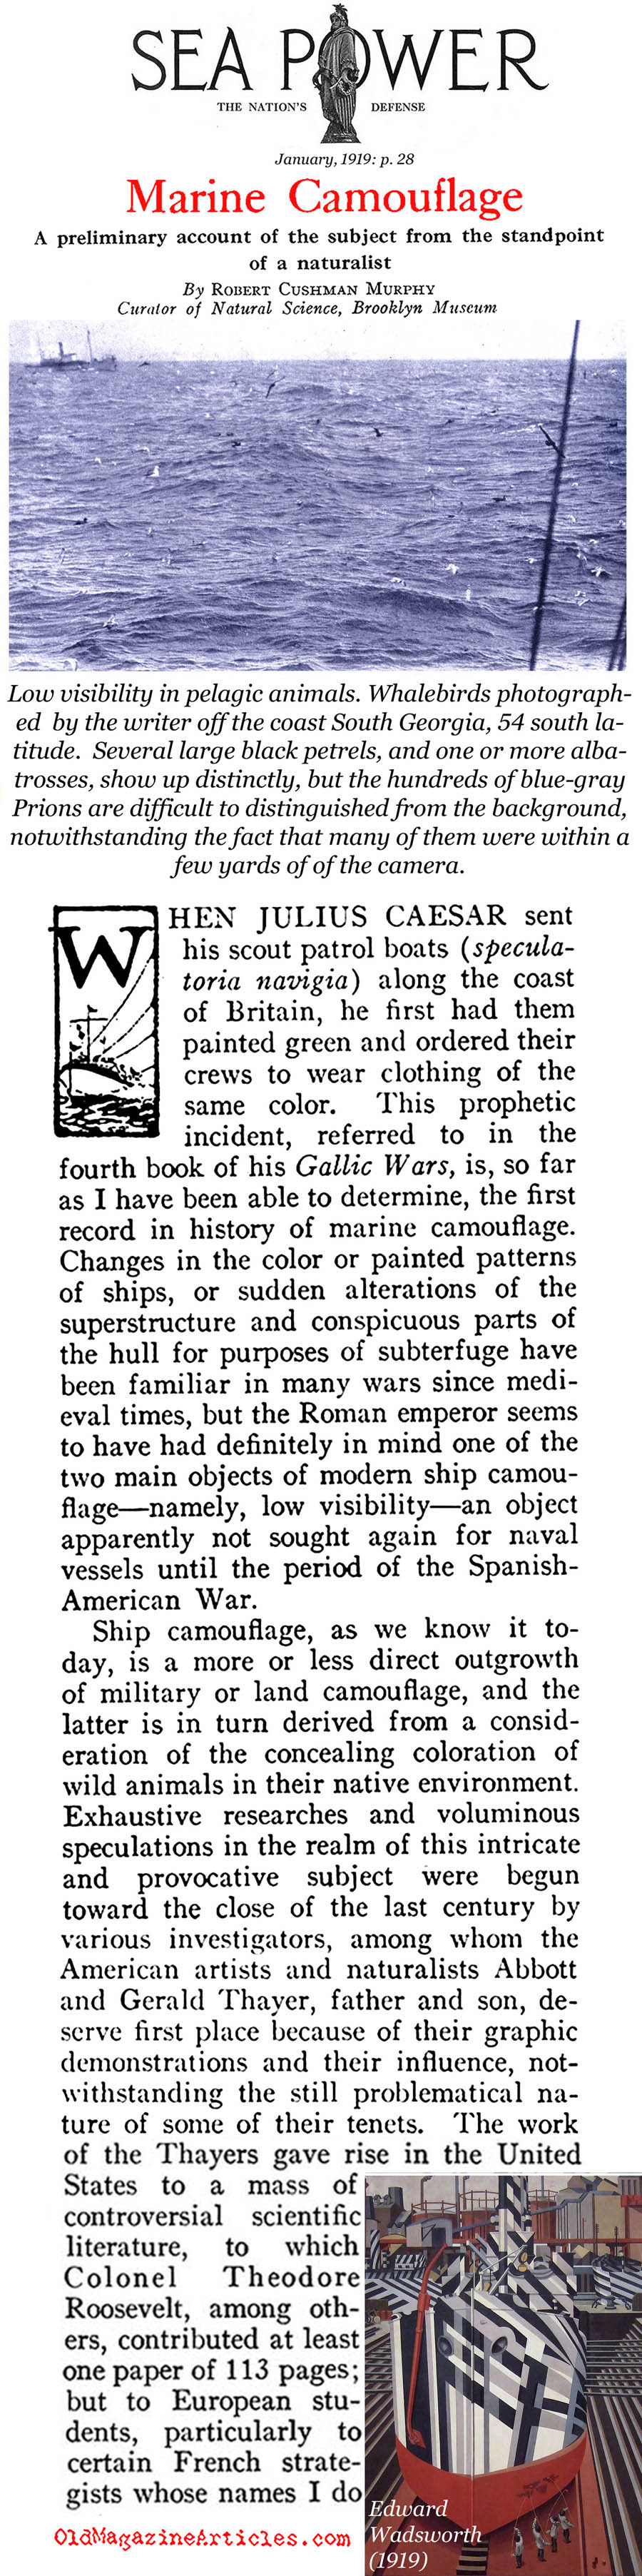 Naval Camouflage of W.W. I (Sea Power Magazine, 1919)